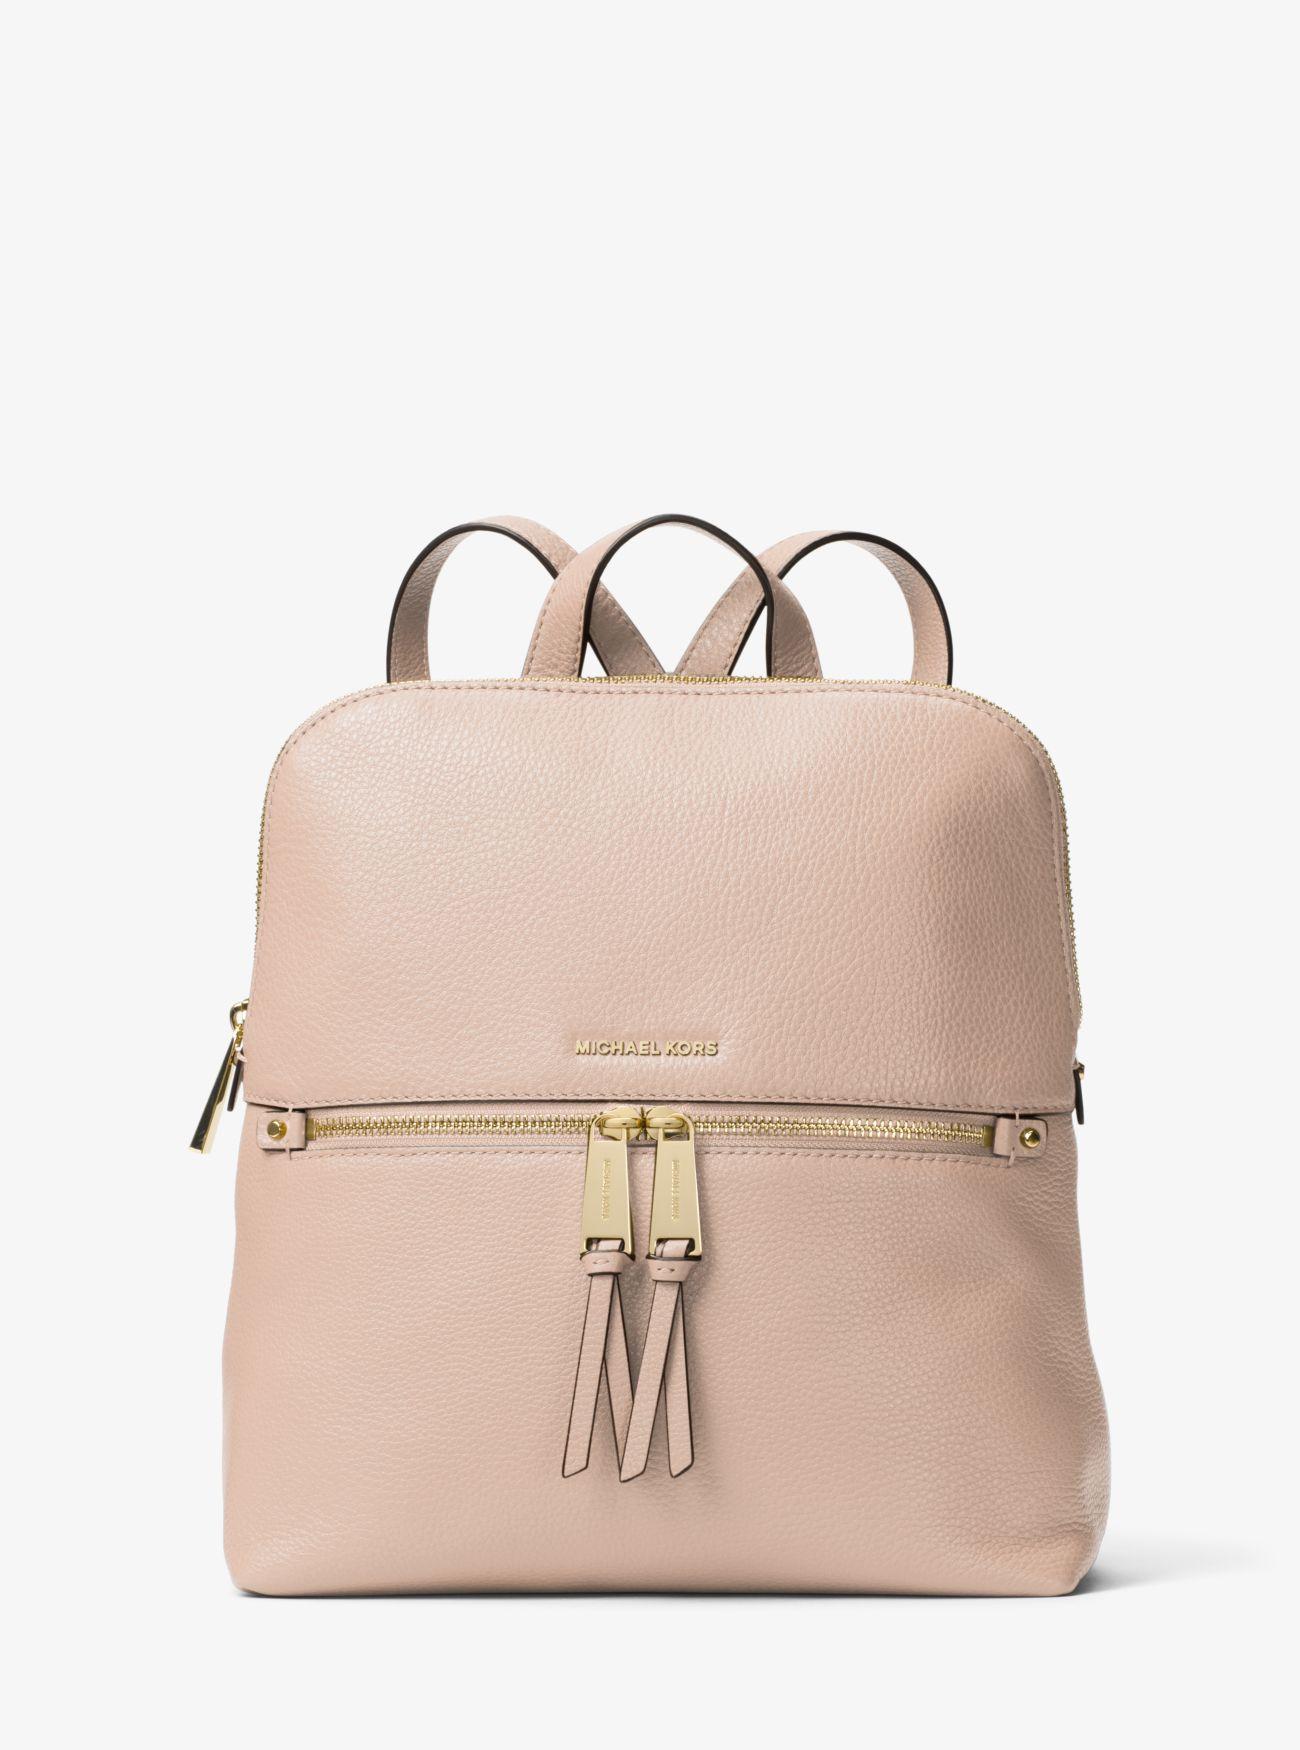 Michael Kors Rhea Medium Slim Leather Backpack in Pink | Lyst